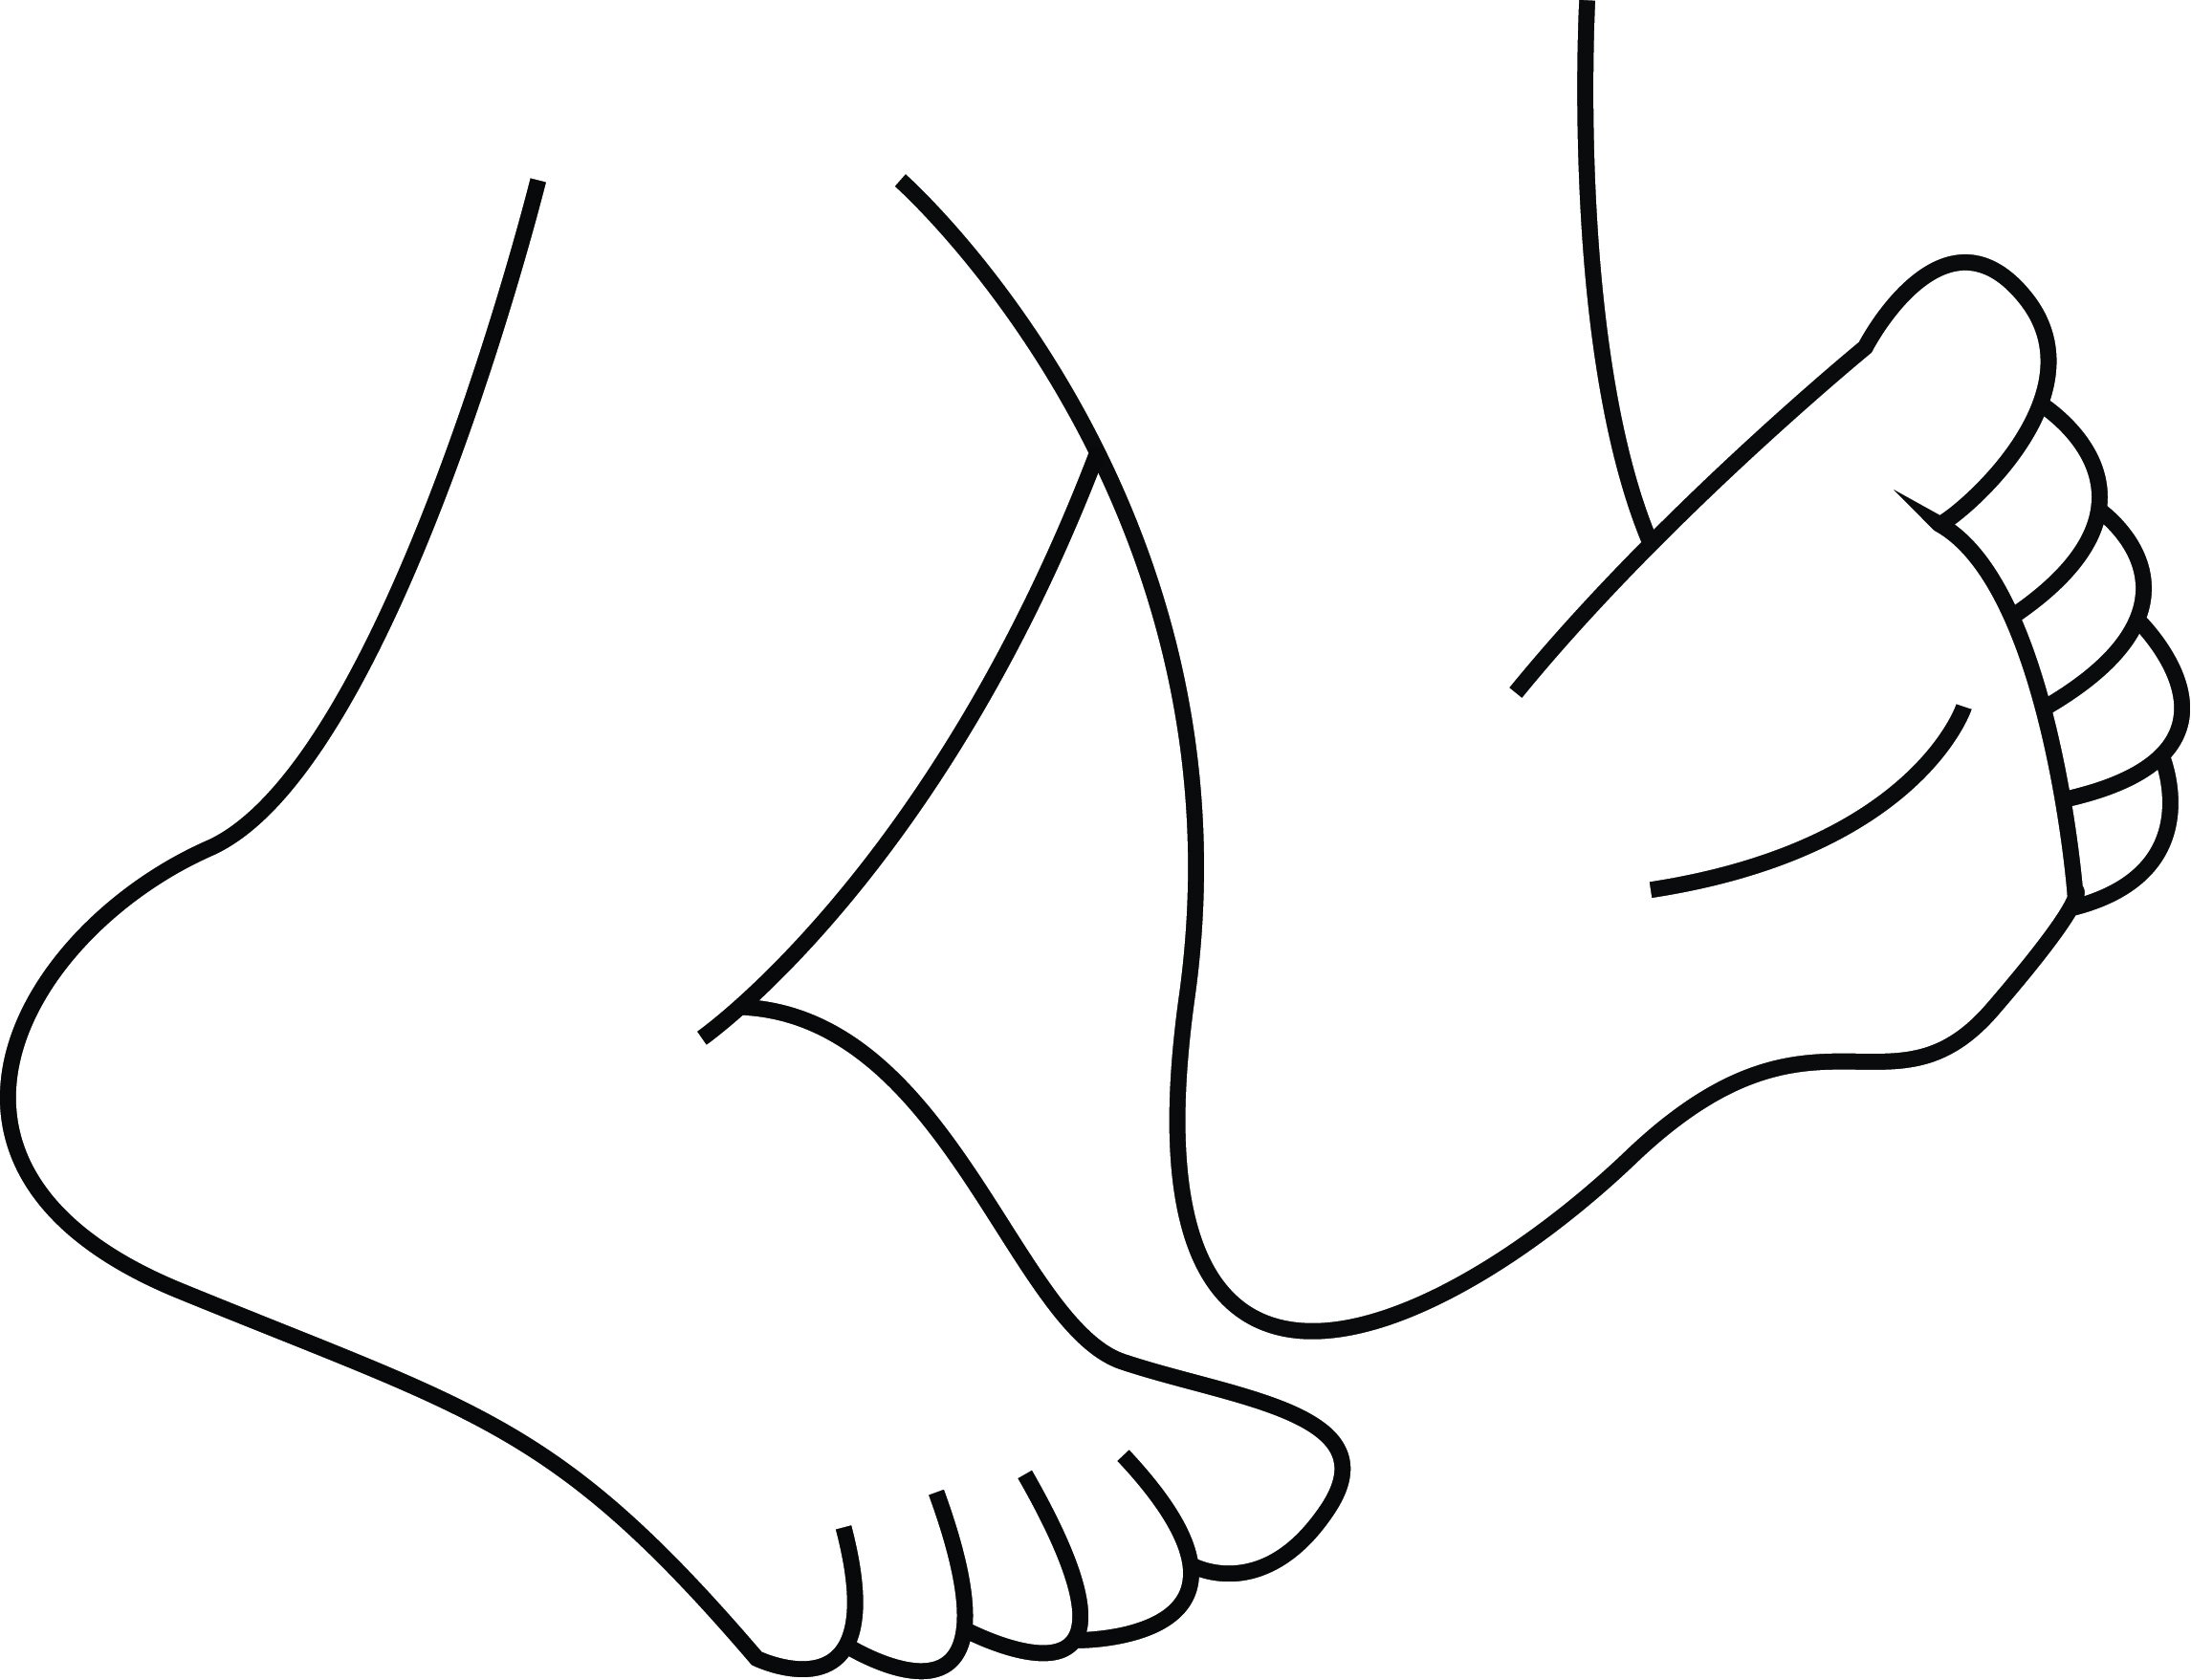 Feet картинка. Ноги раскраска. Нога раскраска для детей. Нога картинка для детей раскраска. Раскраска стопы ног.